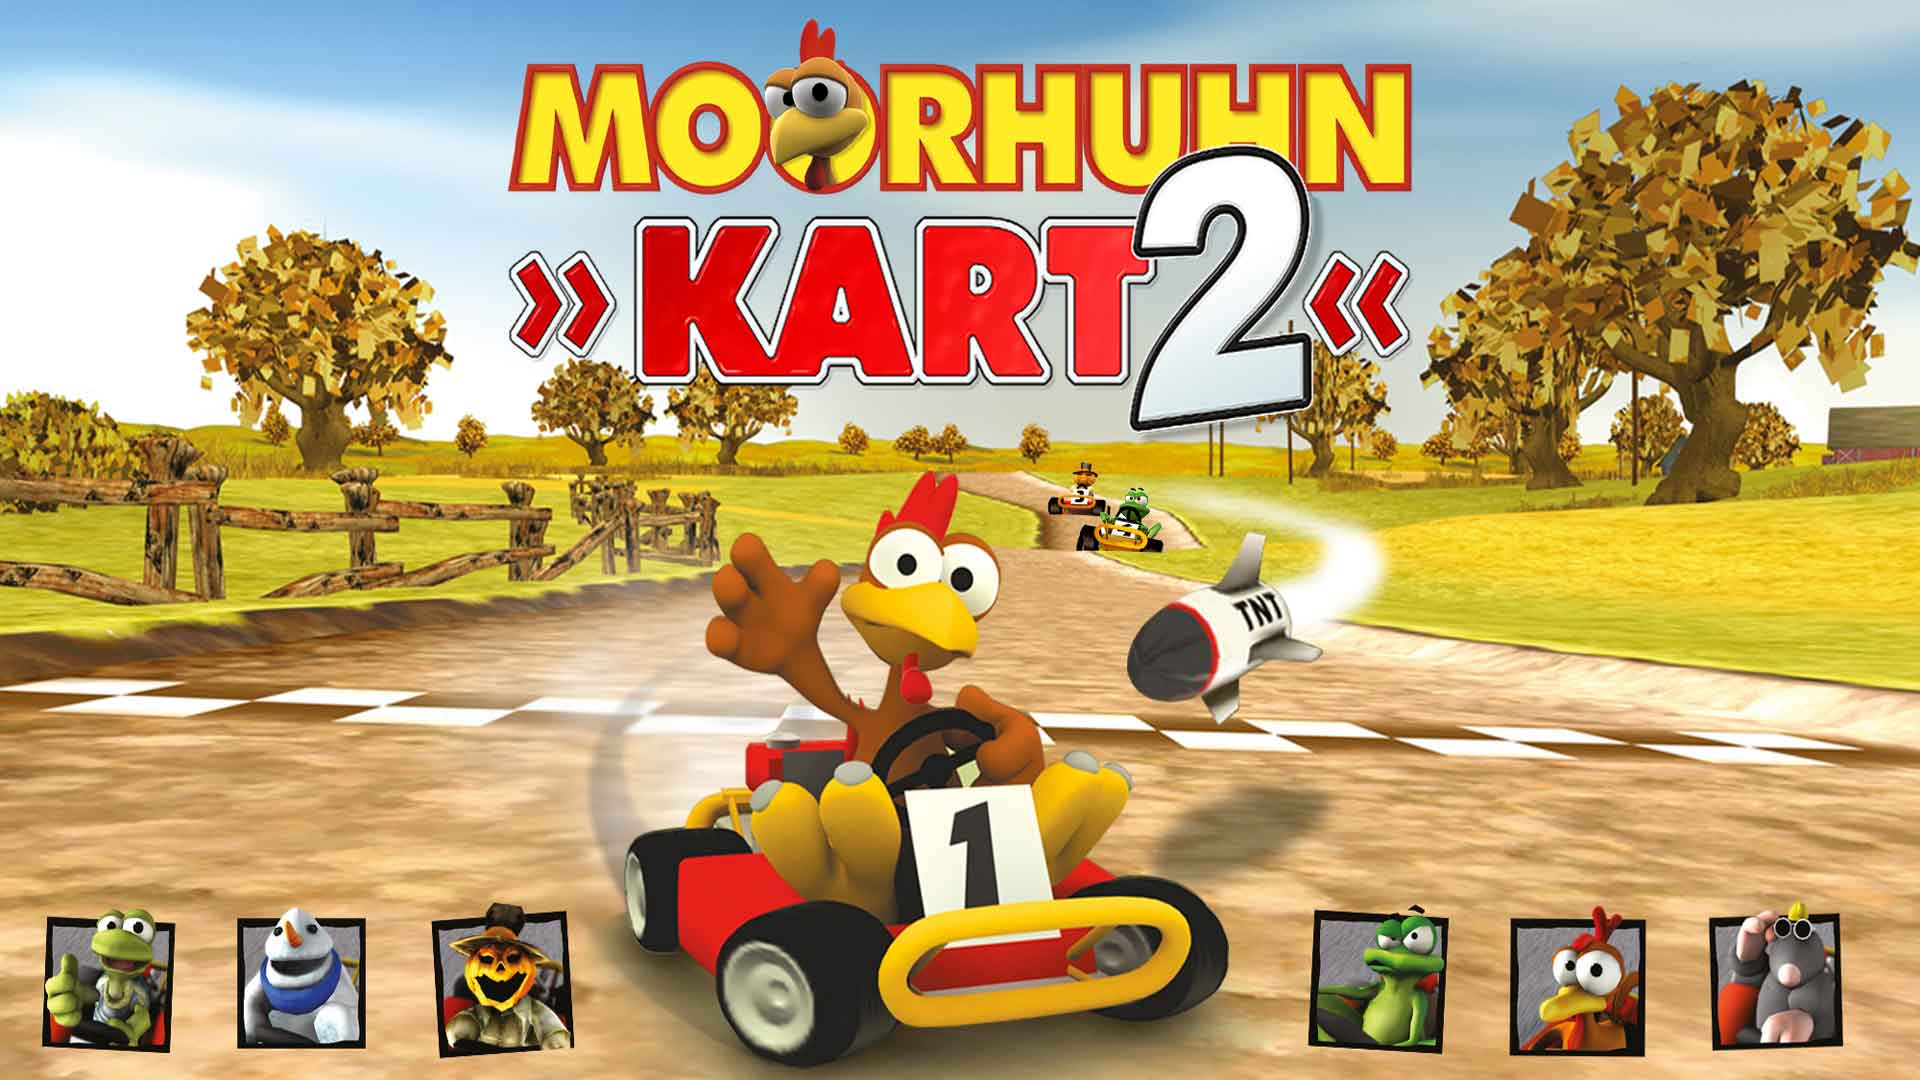 Kart date, on 2 reviews - release Moorhuhn videos, screenshots, RAWG